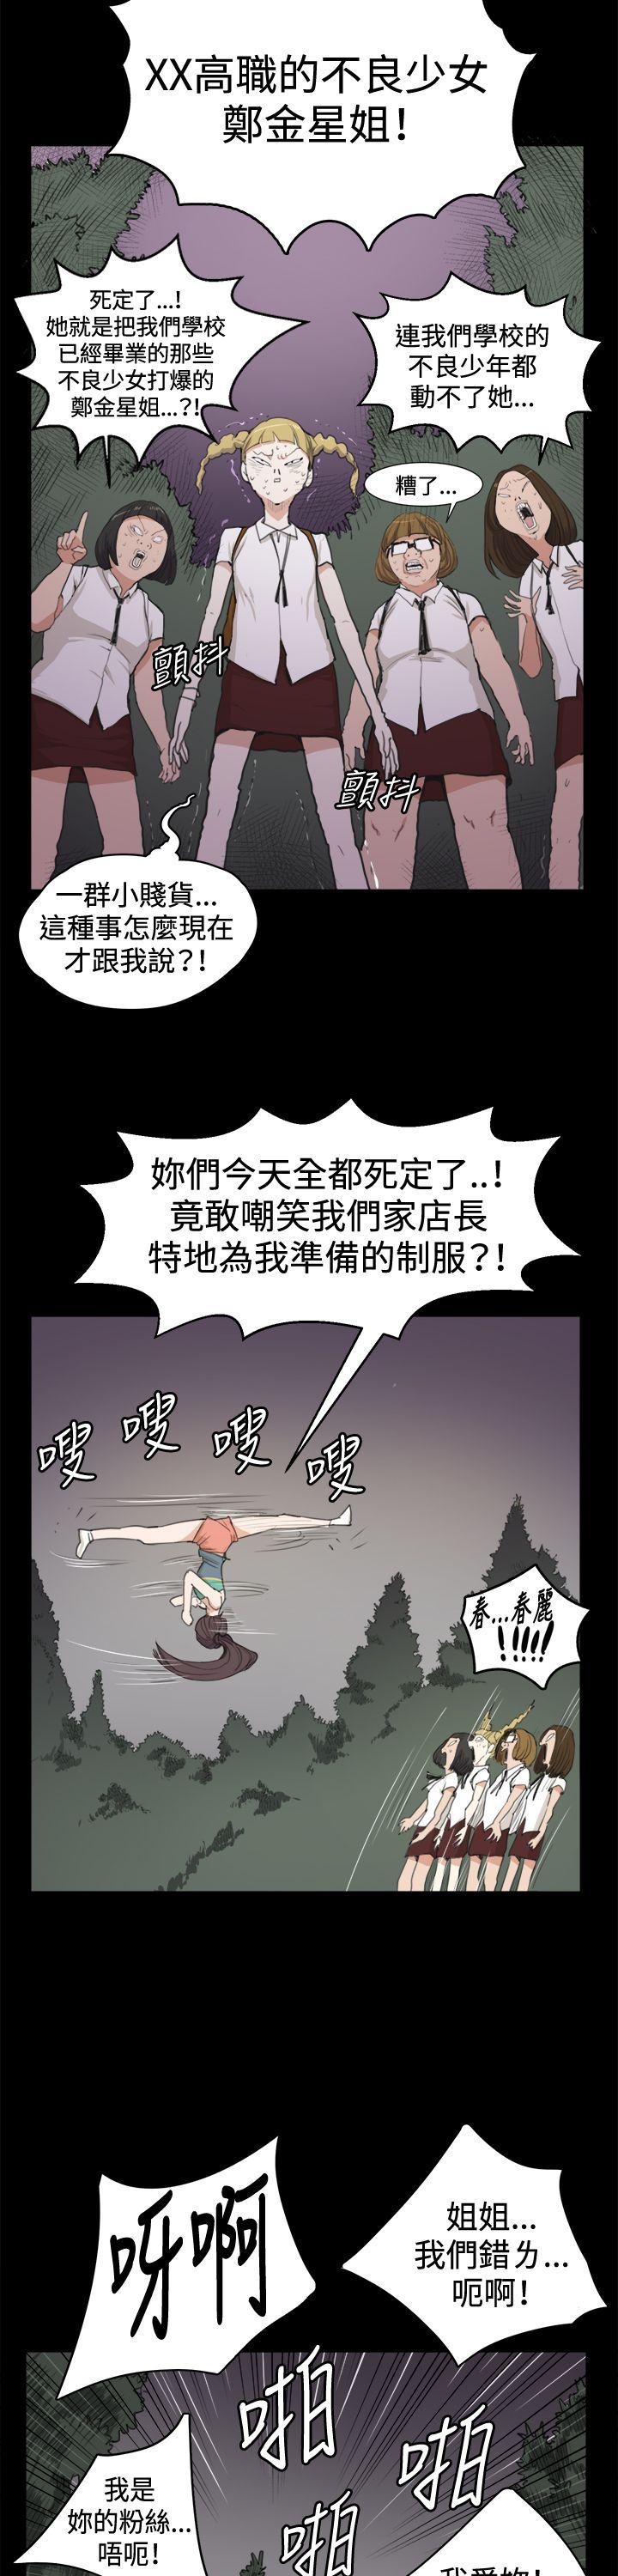 韩国污漫画 深夜便利店 第9话 13